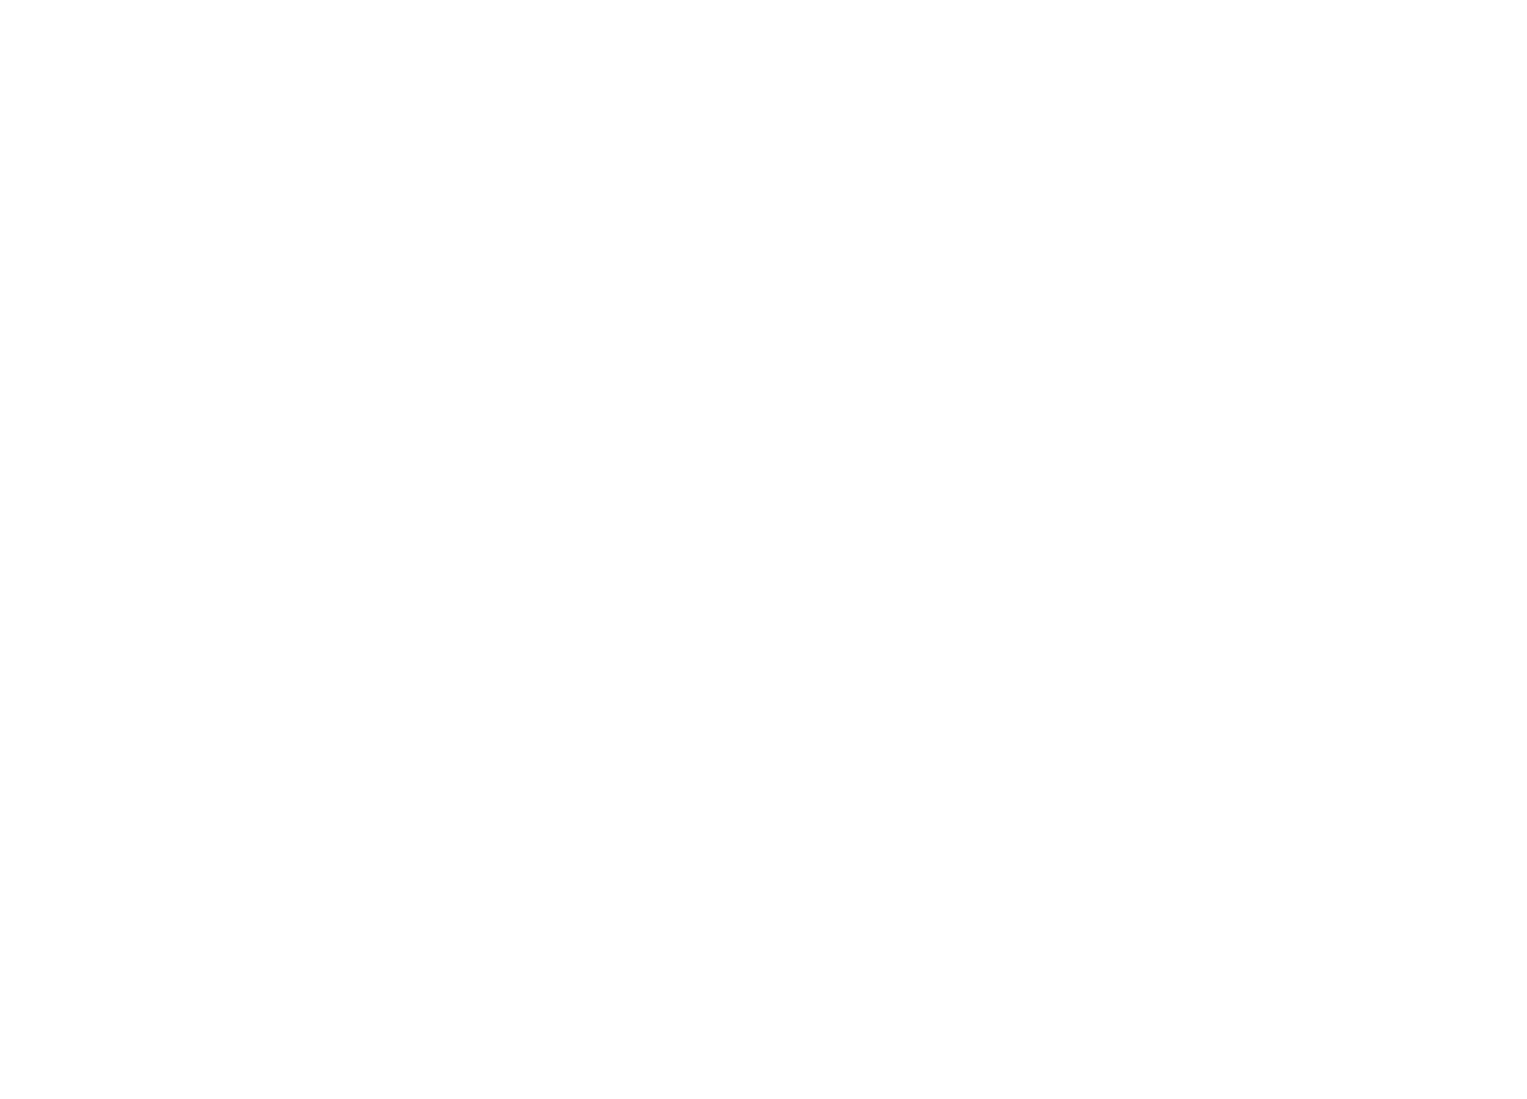 Arista Networks logo for dark backgrounds (transparent PNG)